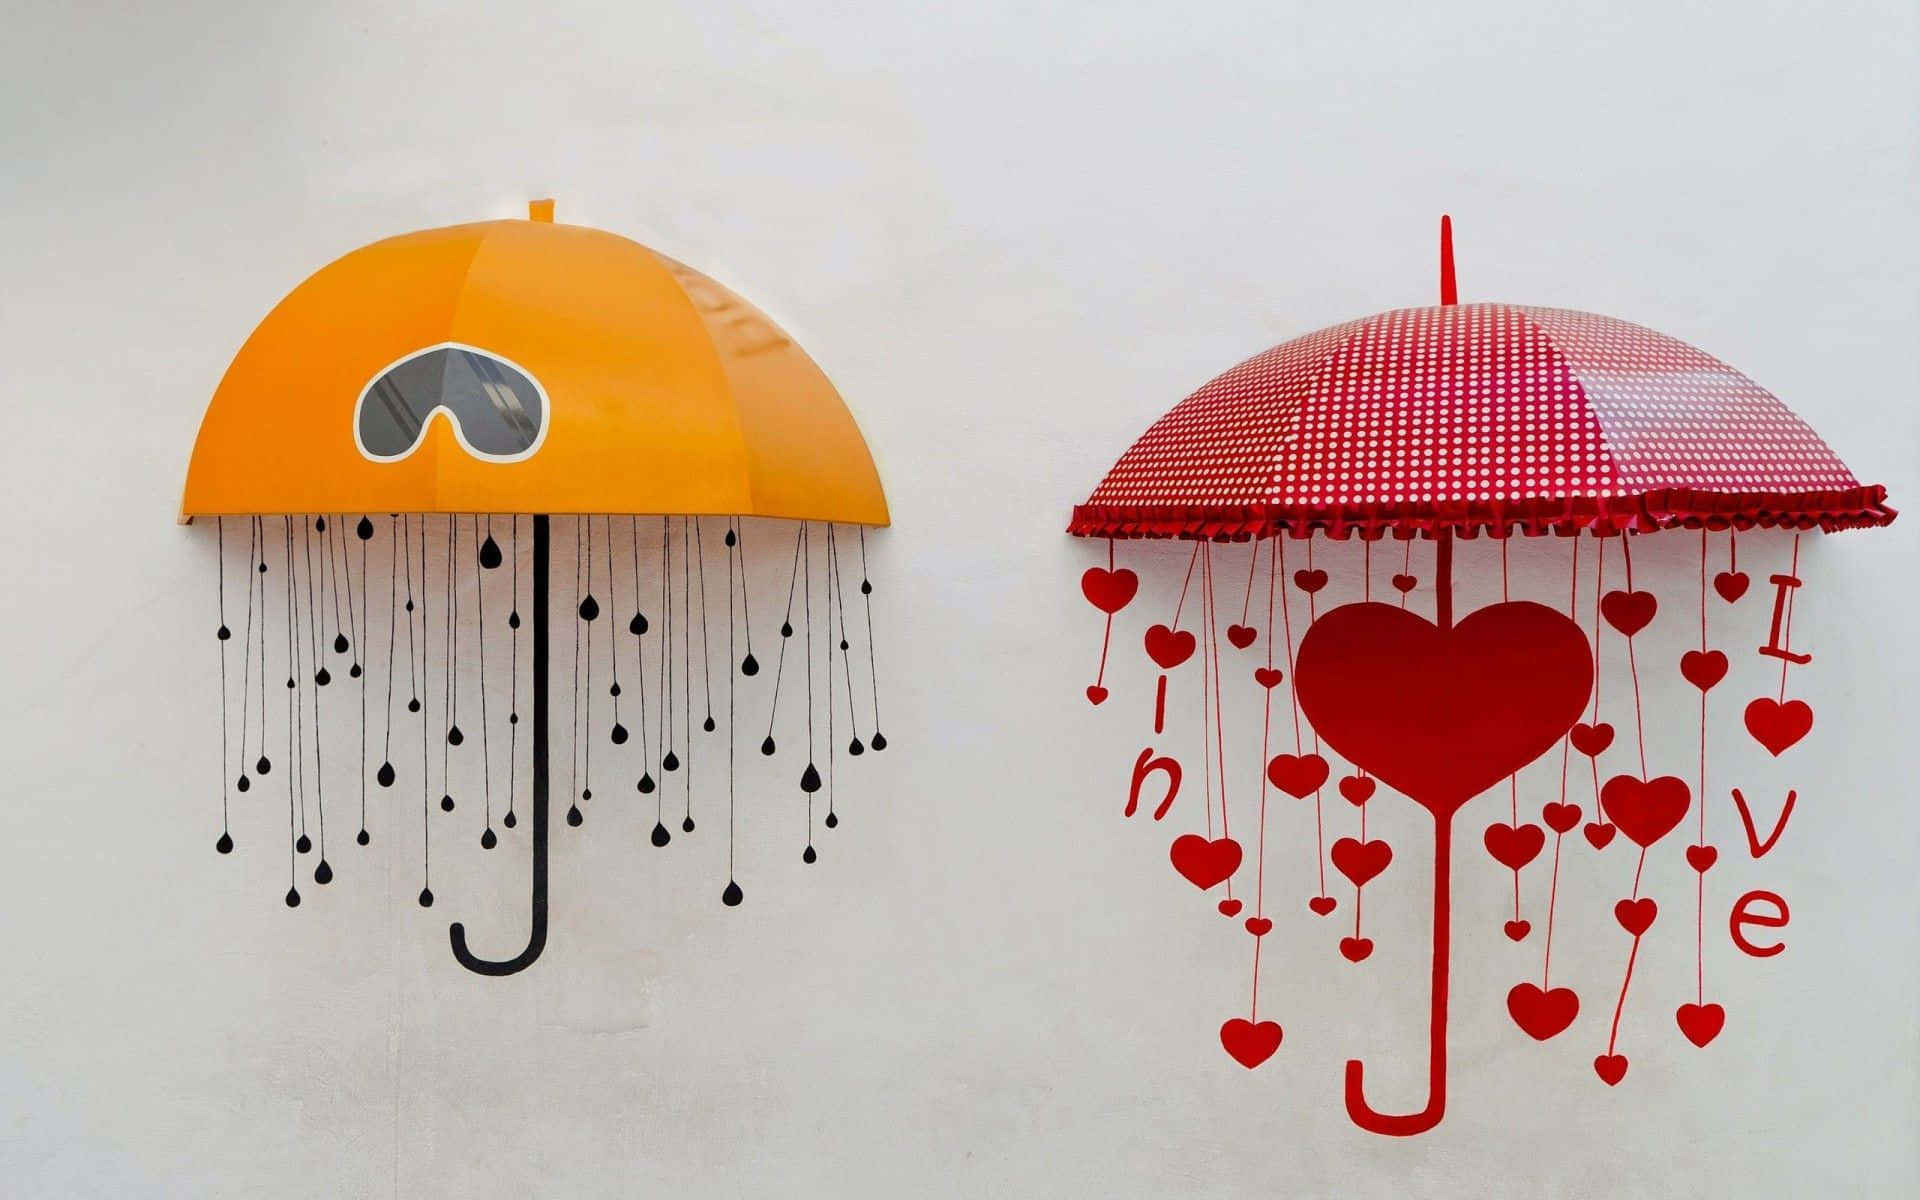 Artistic Umbrellas Love Rain Wall Installation Wallpaper